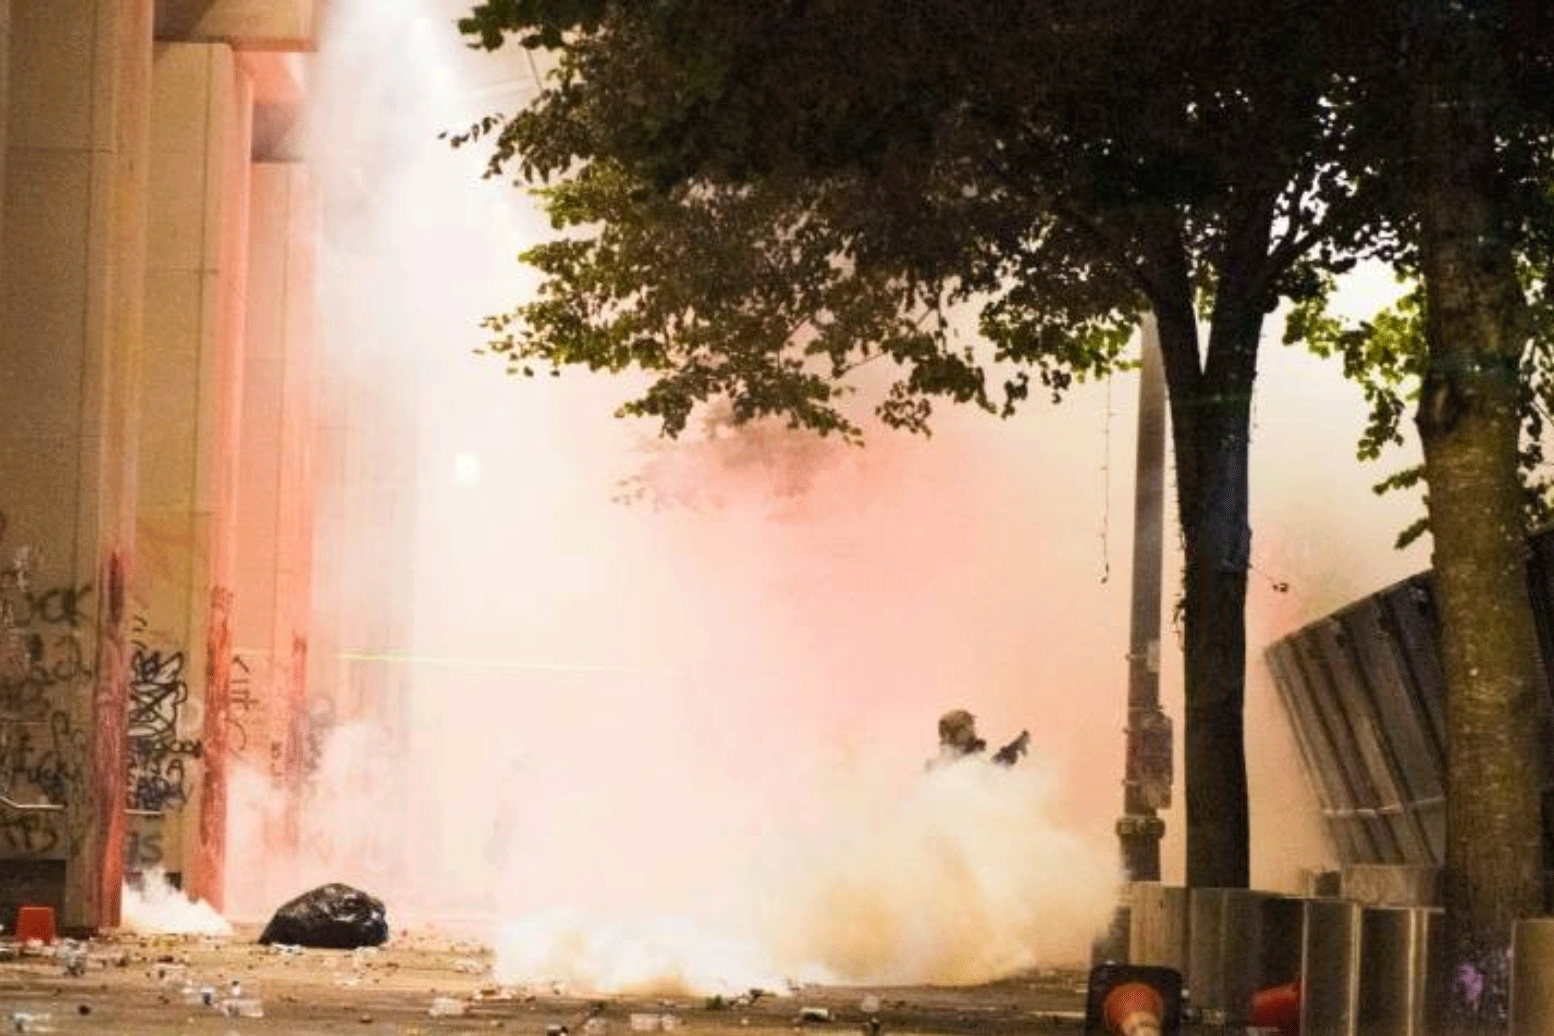 تستخدم الشرطة منذ 24 يوليو 2020 القنابل الضوئية وغاز الفلفل لصد المتظاهرين في سياتل